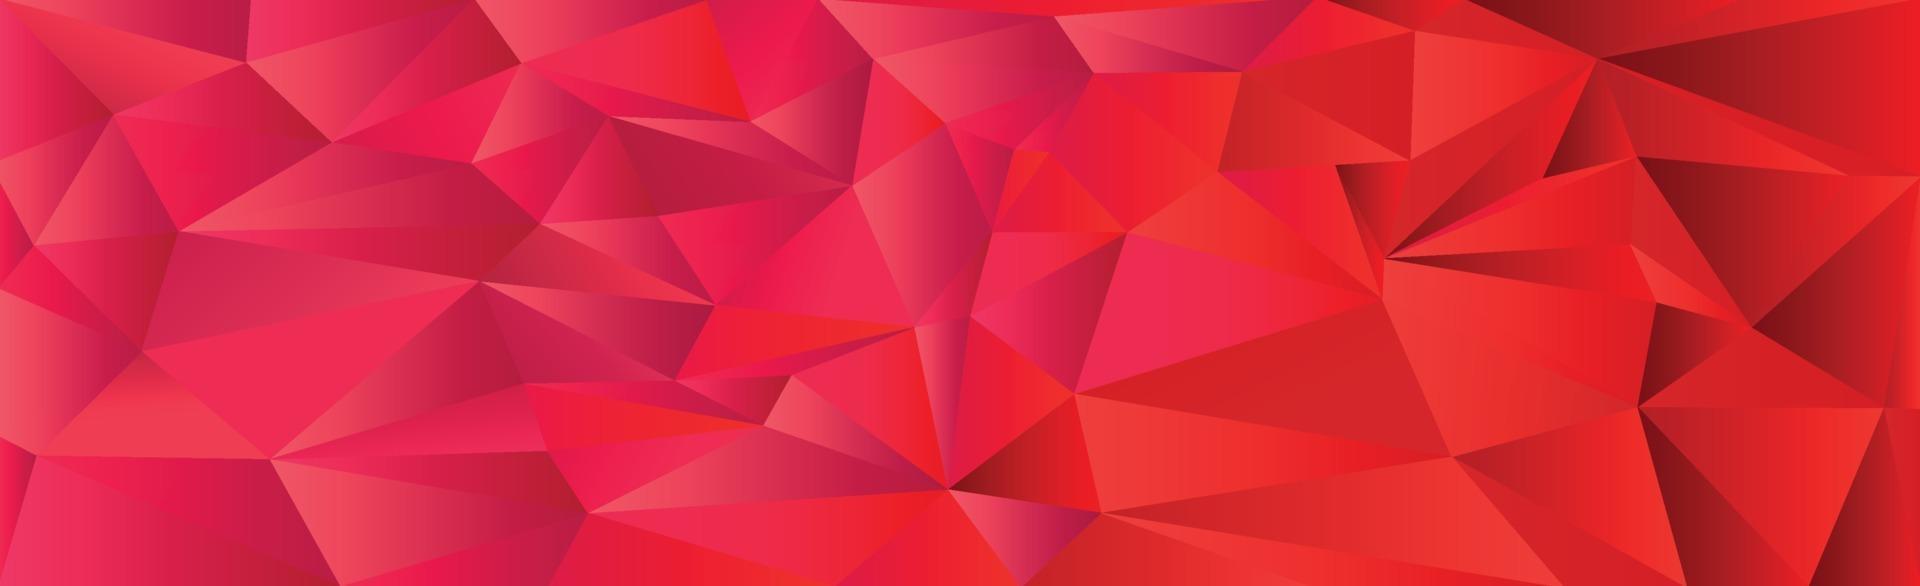 triángulos degradados rojos abstractos de diferentes tamaños - vector